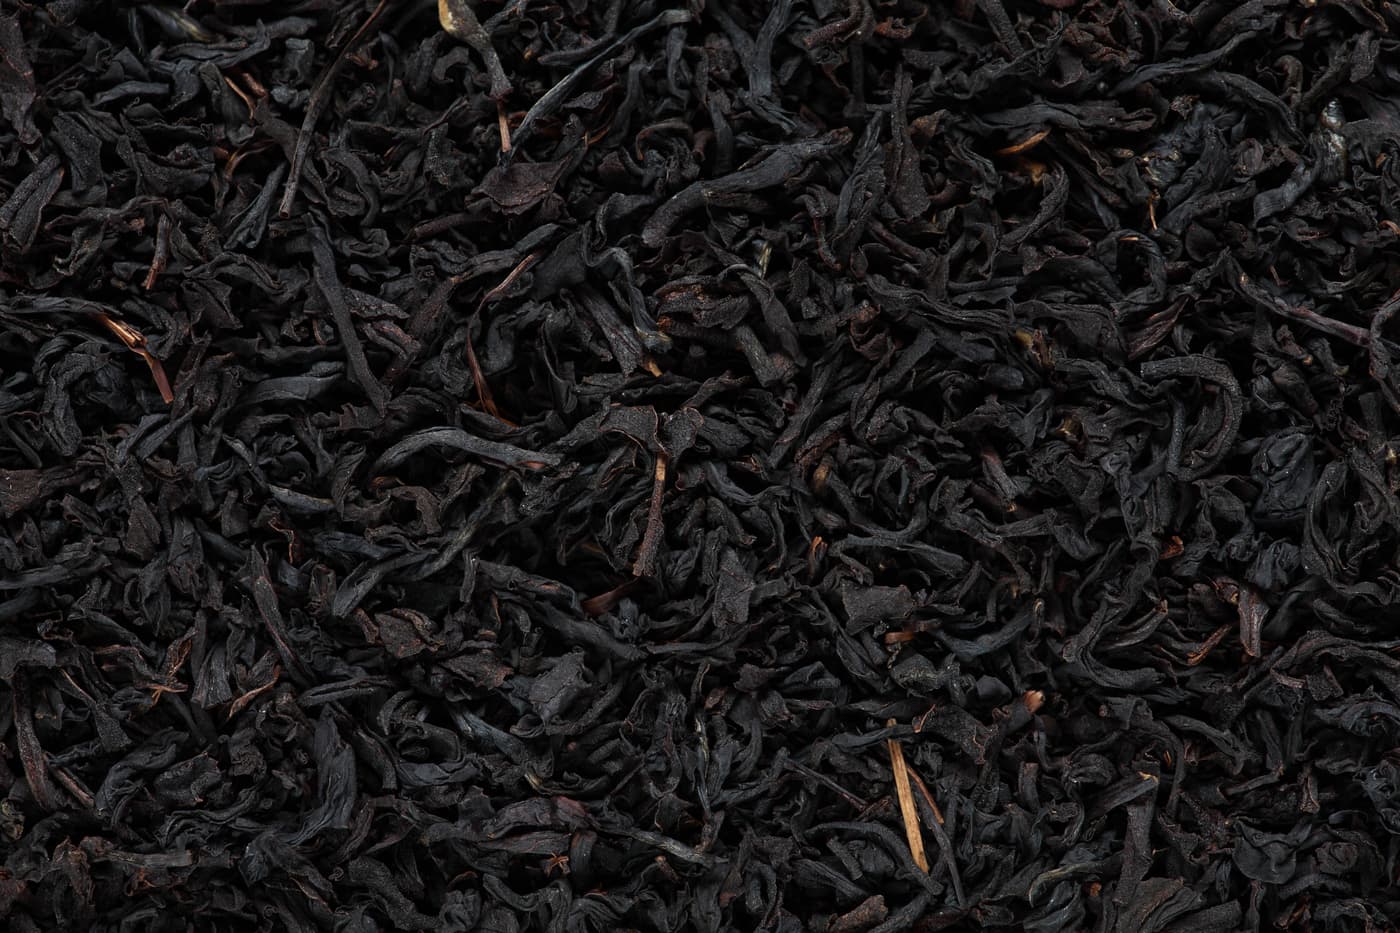 Dried black tea leaves.